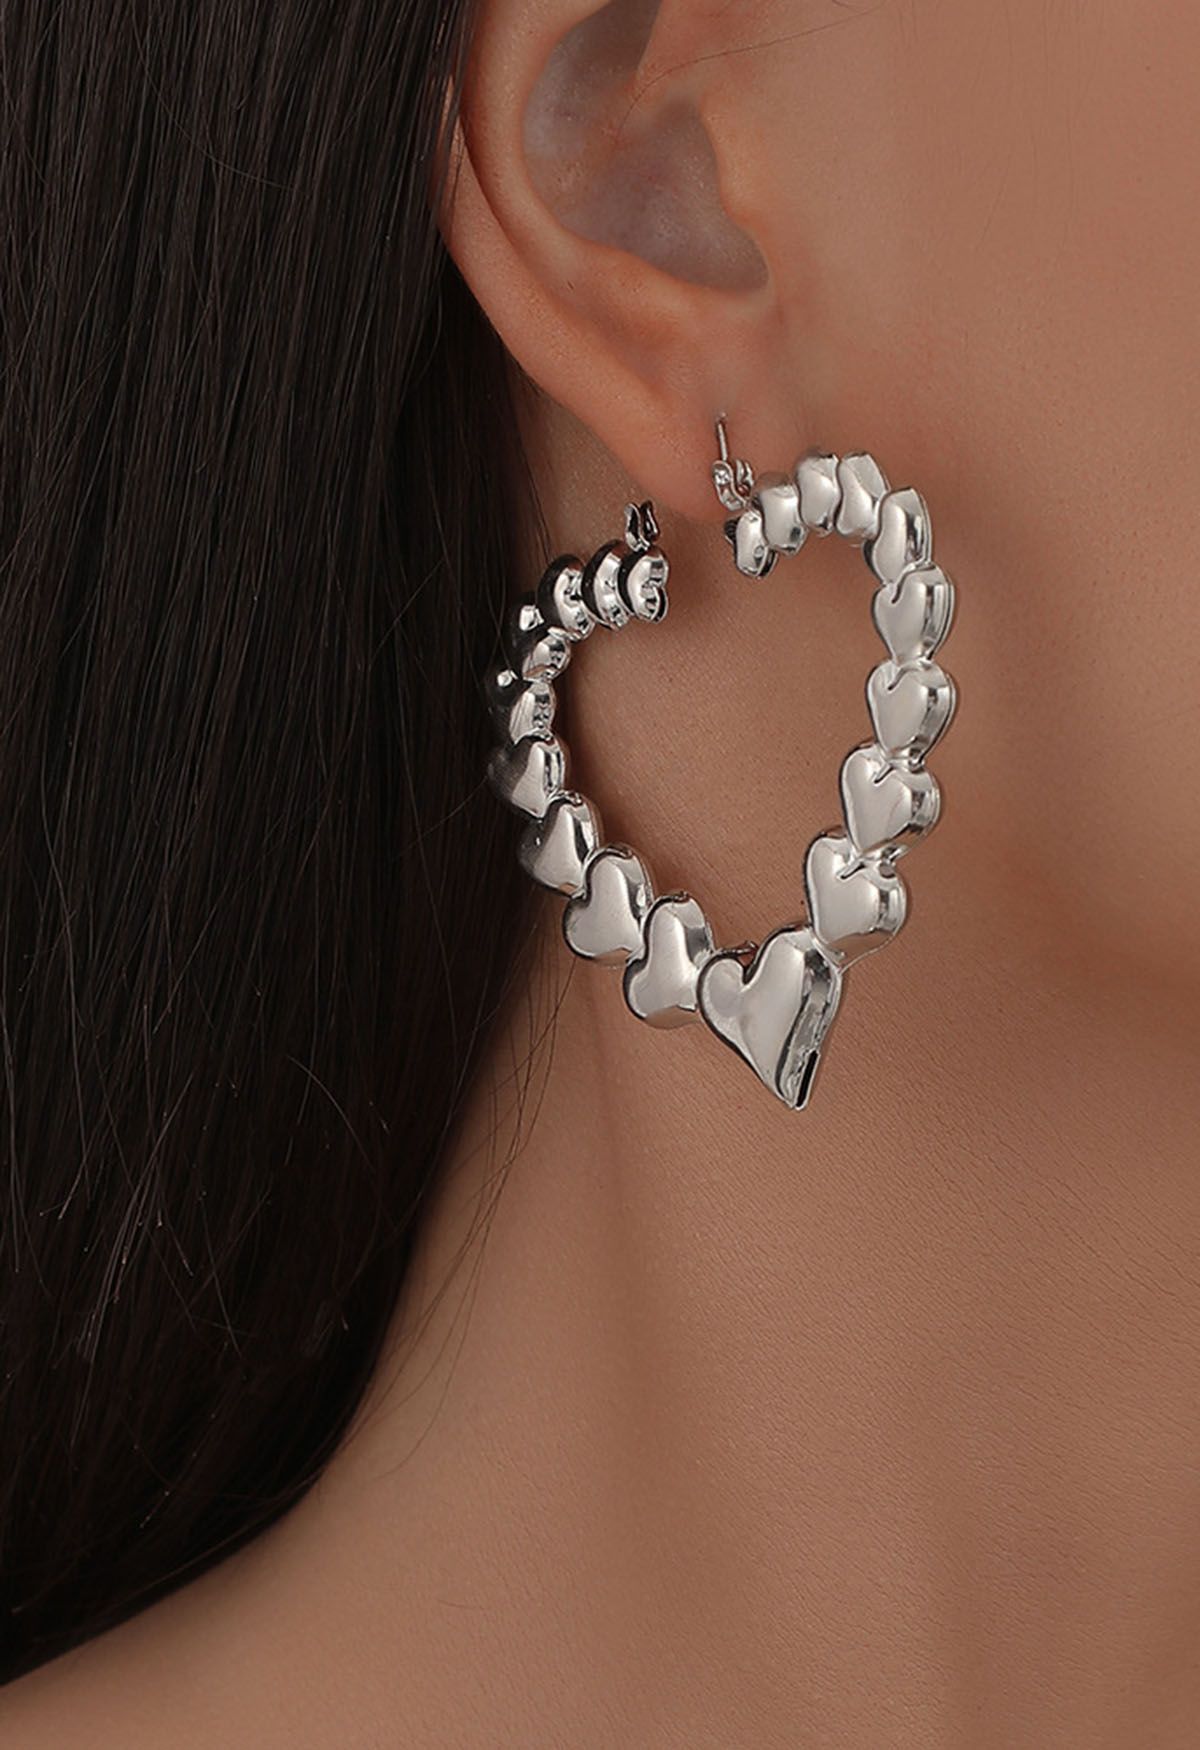 Hollow Out Metal Heart Earrings in Silver